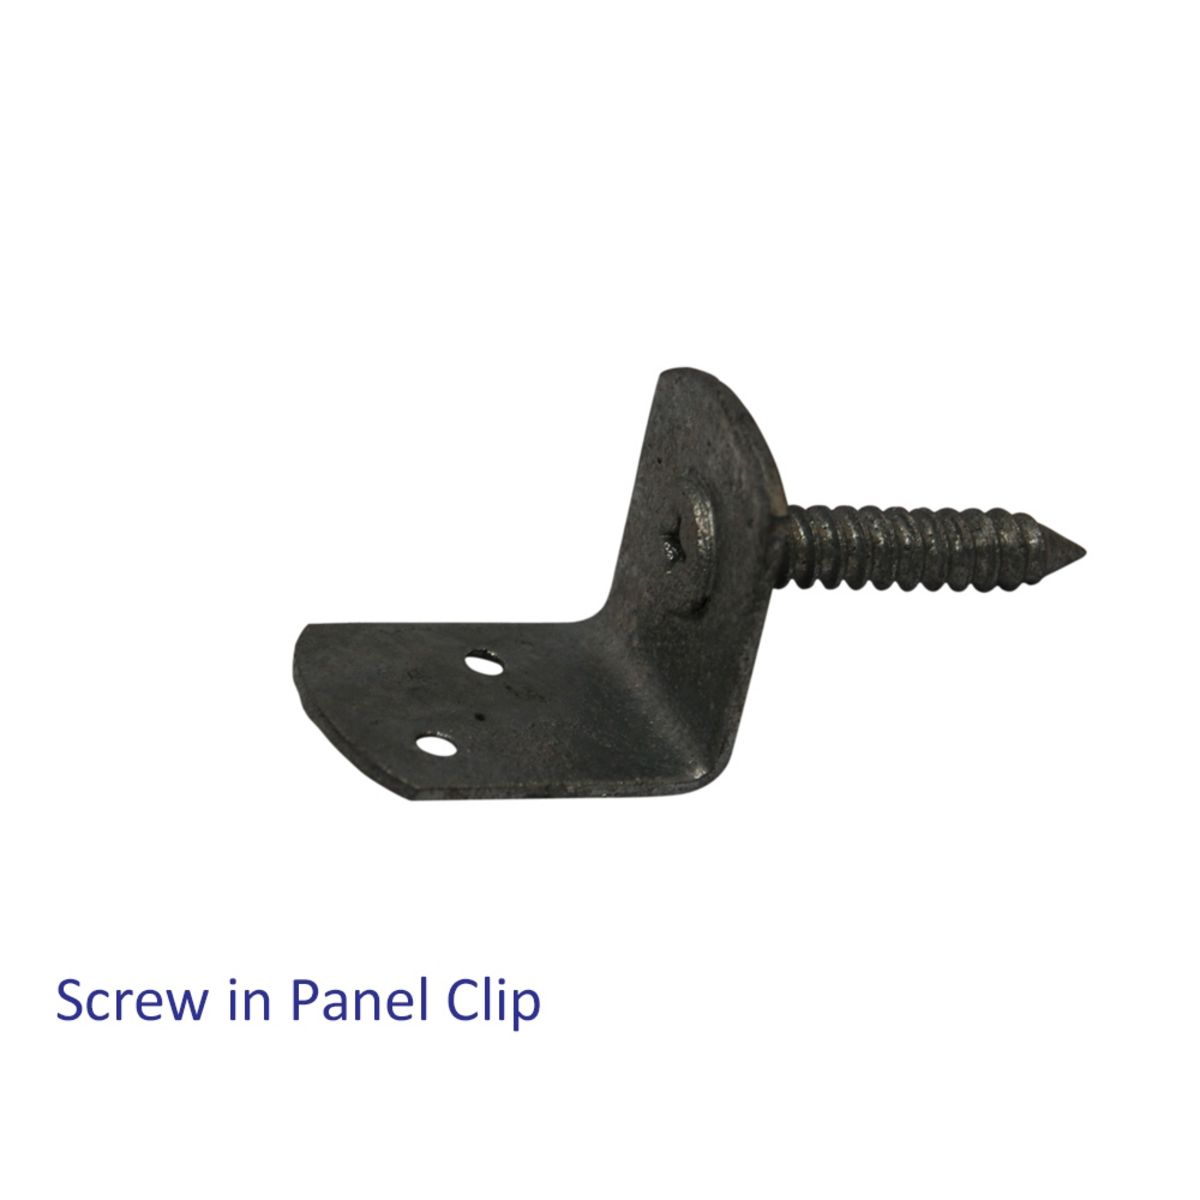 84462-web Screw in Panel Clip.jpg